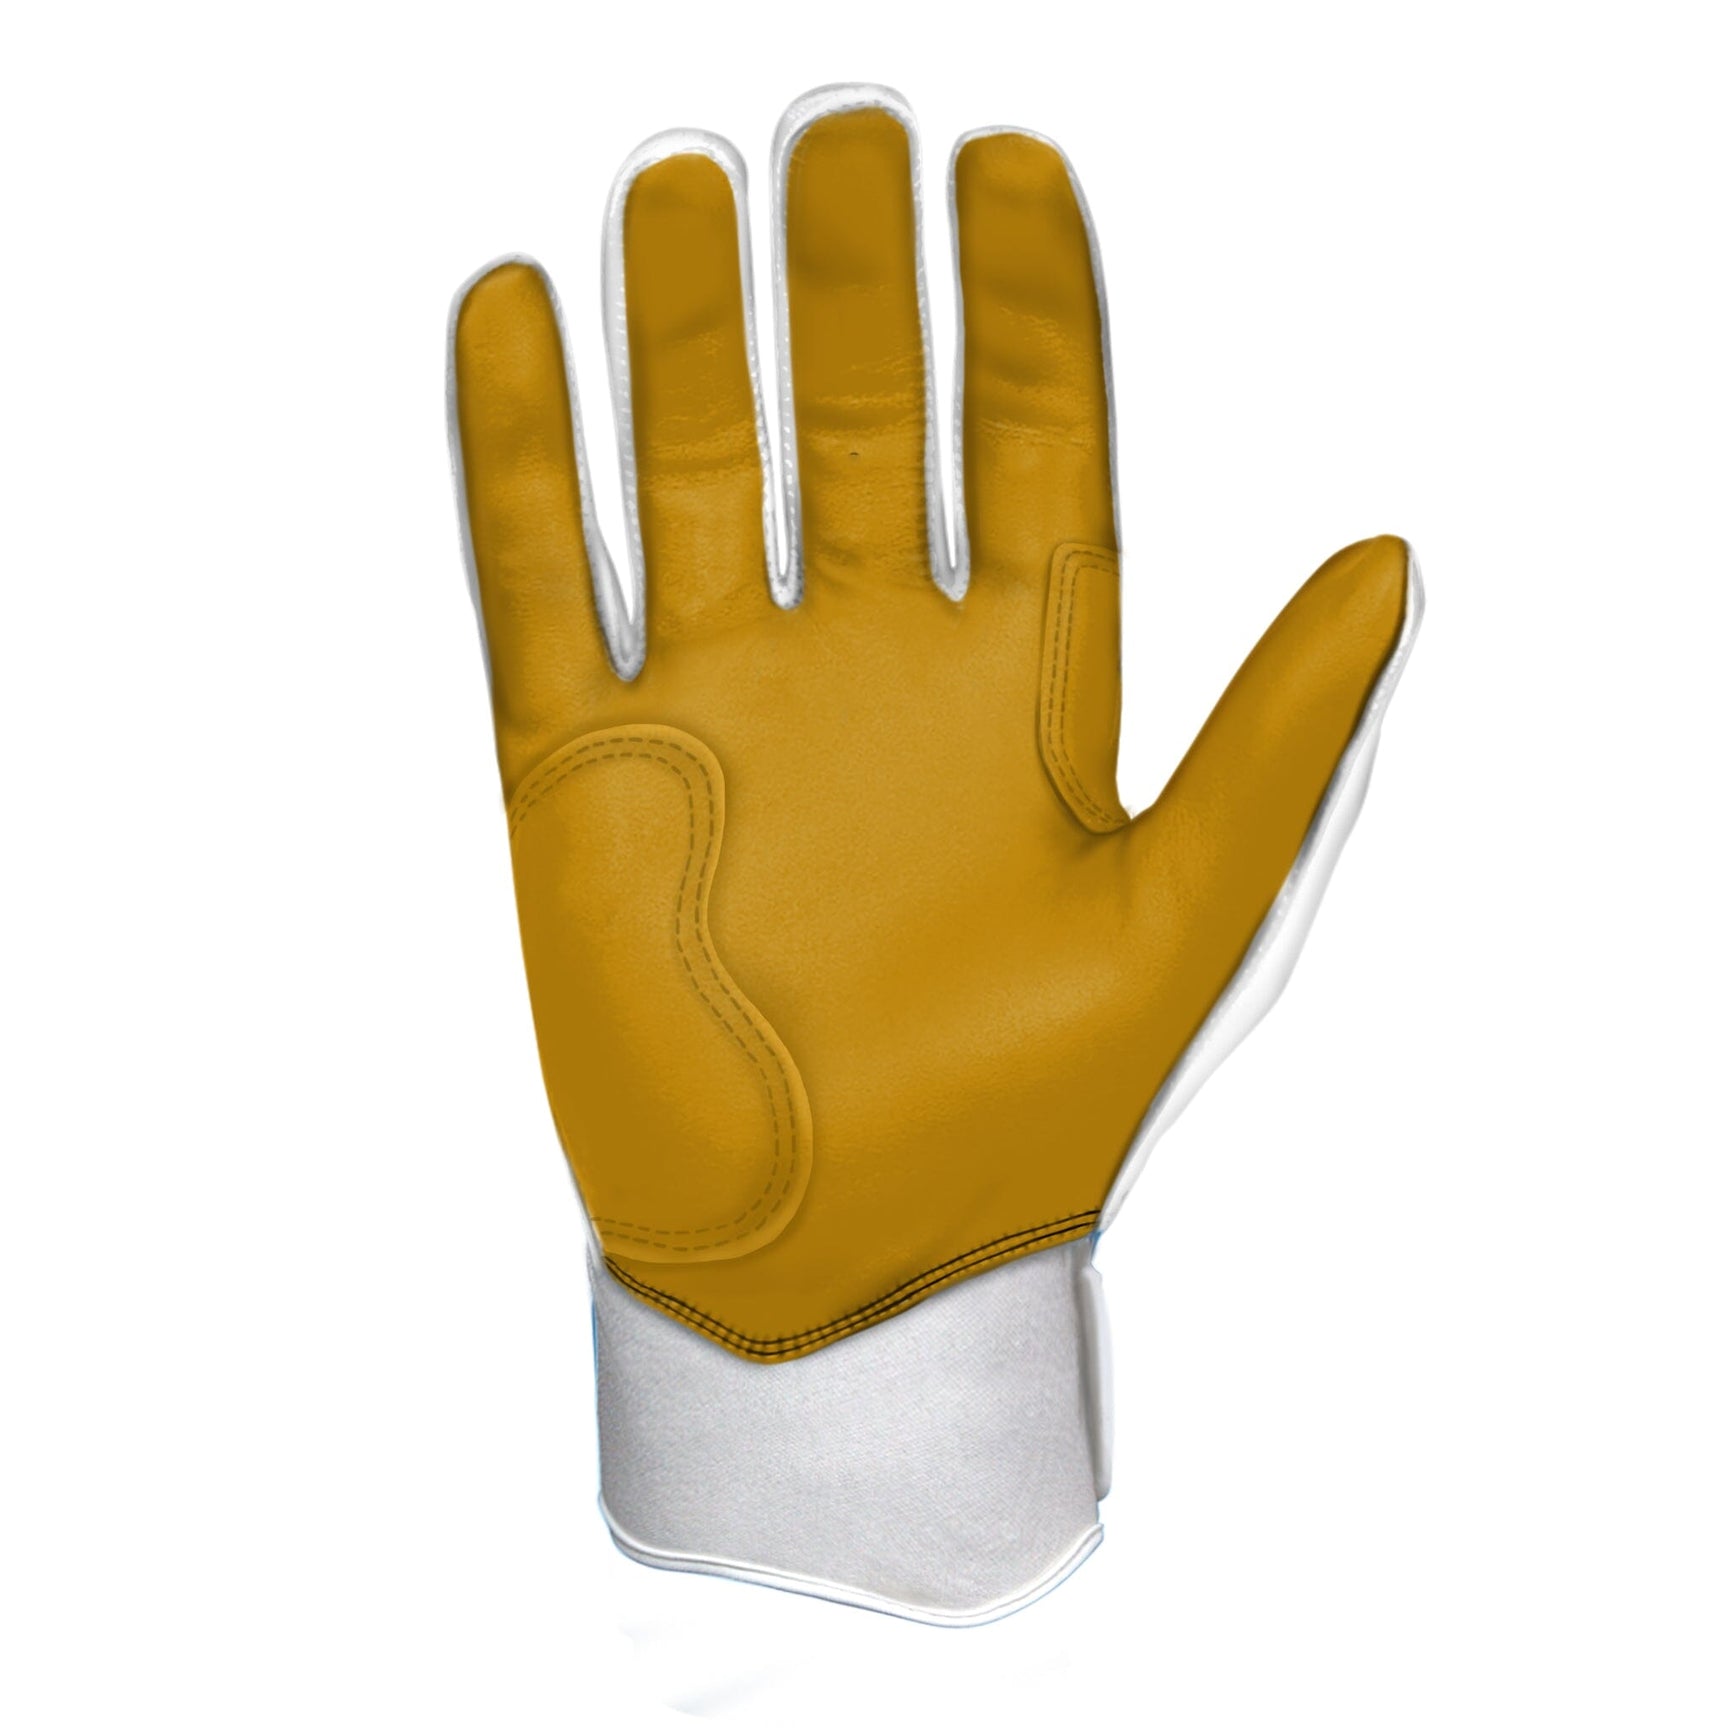 Bruce Bolt Premium Pro Short Cuff Batting Gloves White